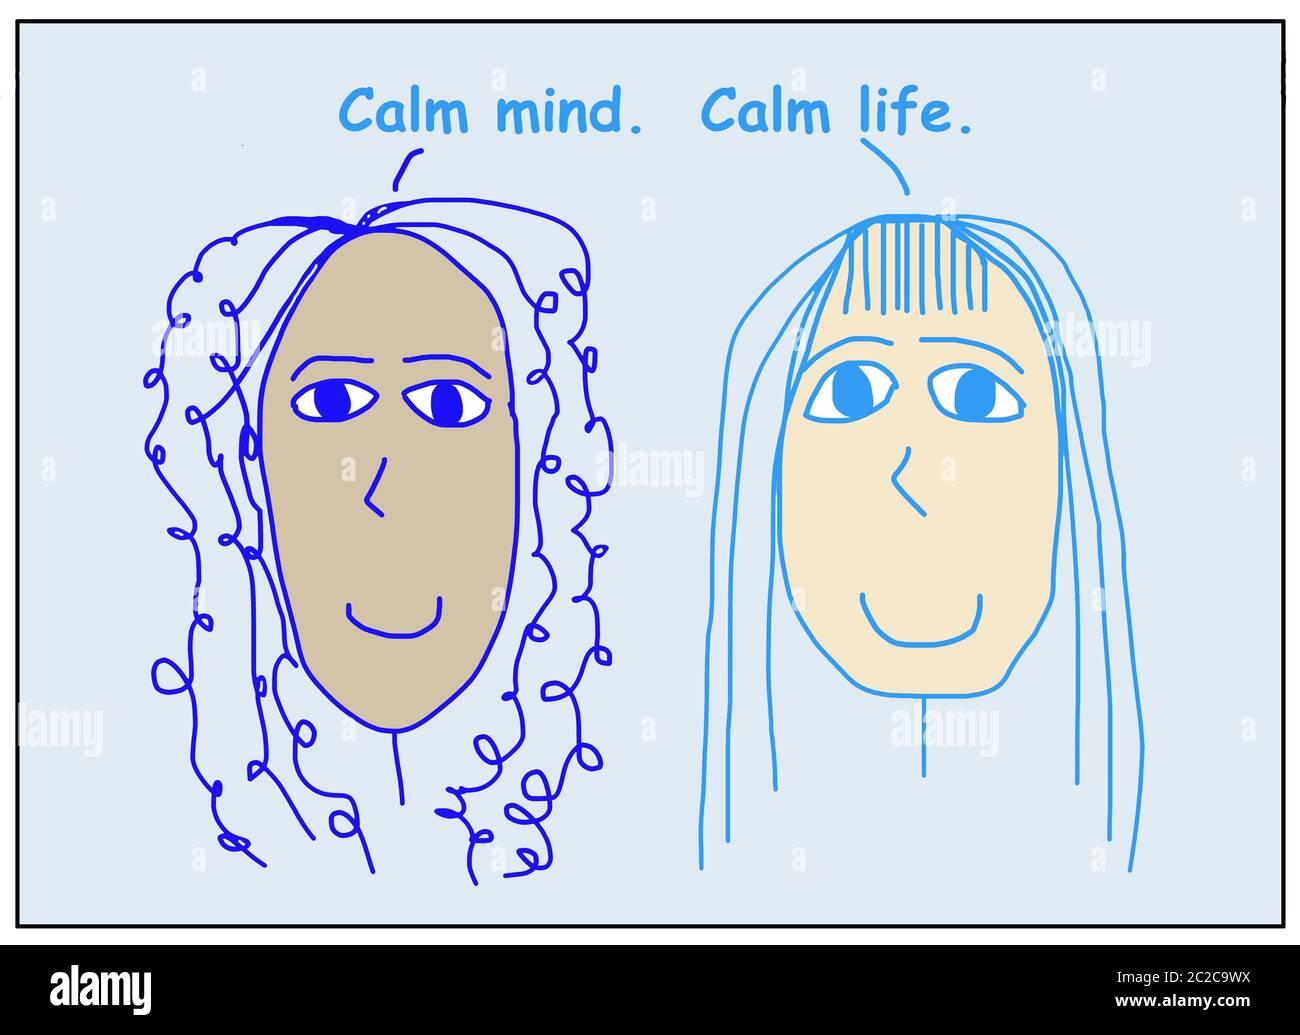 Farb-Cartoon von zwei schönen, lächelnden, ethnisch verschiedenen Frauen, die Ruhe Geist, ruhiges Leben. Stockfoto